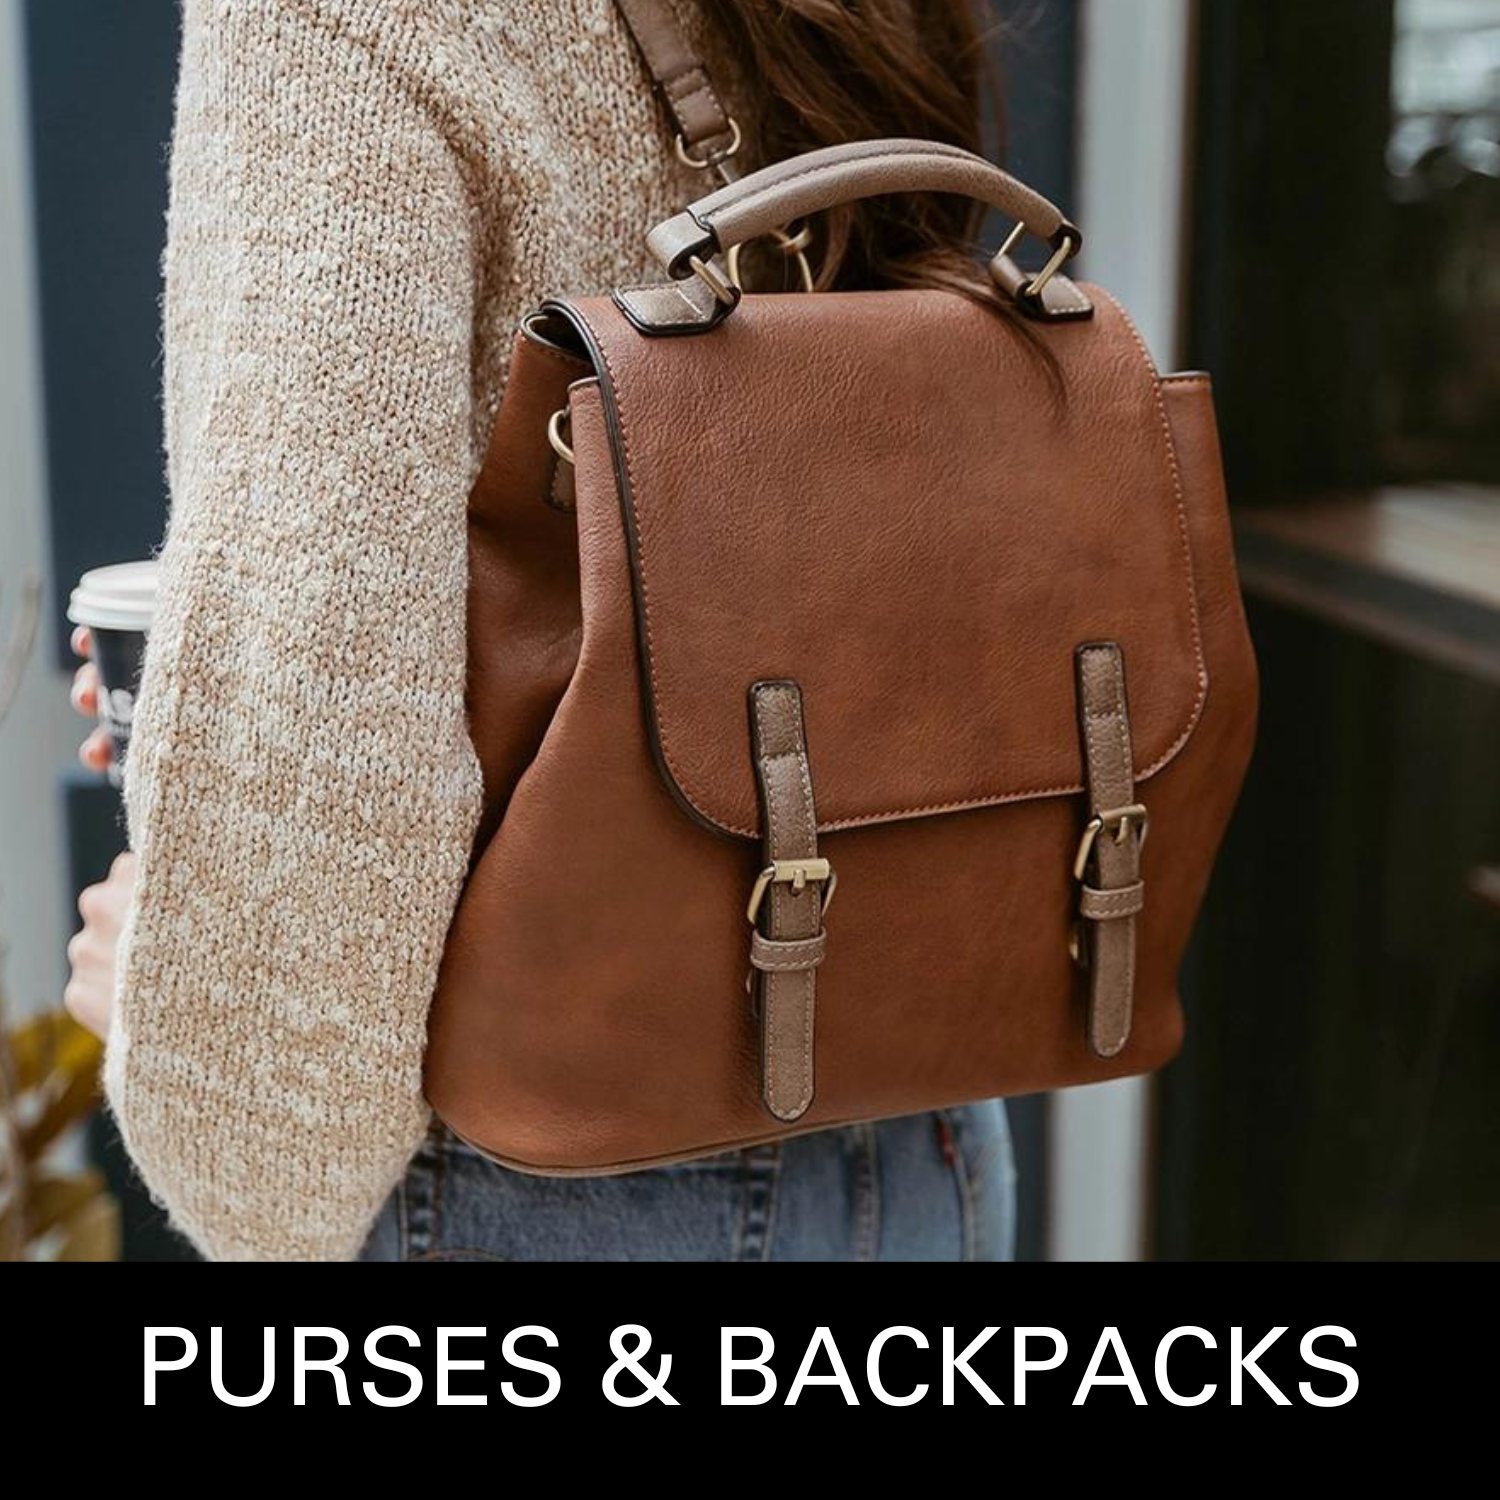 Purses-handbags-wallets-backpacks-tote-bags